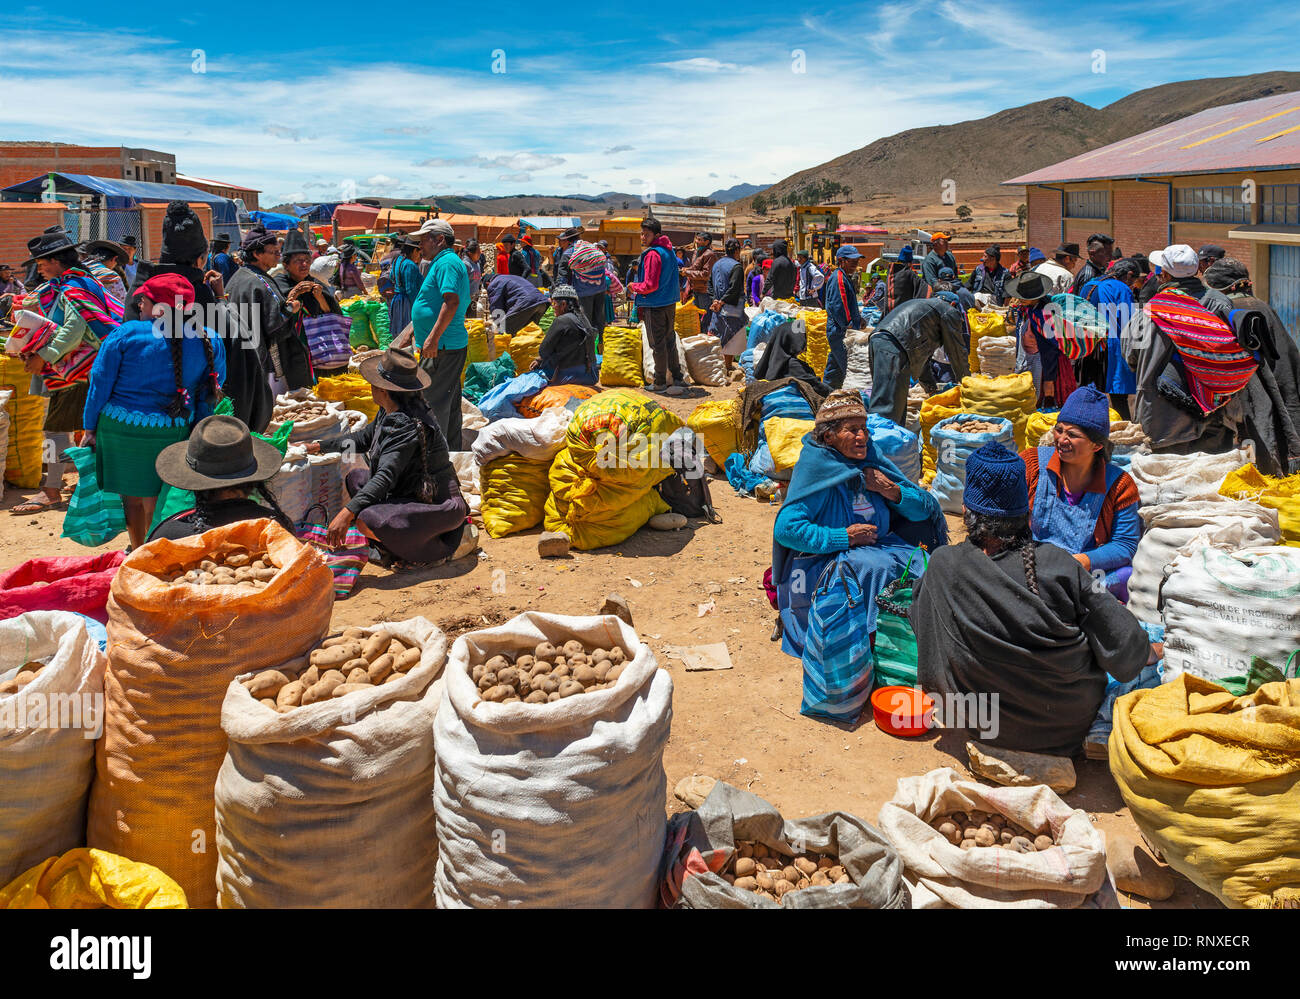 Tarabuco indigene Völker Kauf und Verkauf von Waren auf dem bunten Markt am Sonntag von tarabuco in der Nähe von Sucre, Bolivien. Stockfoto